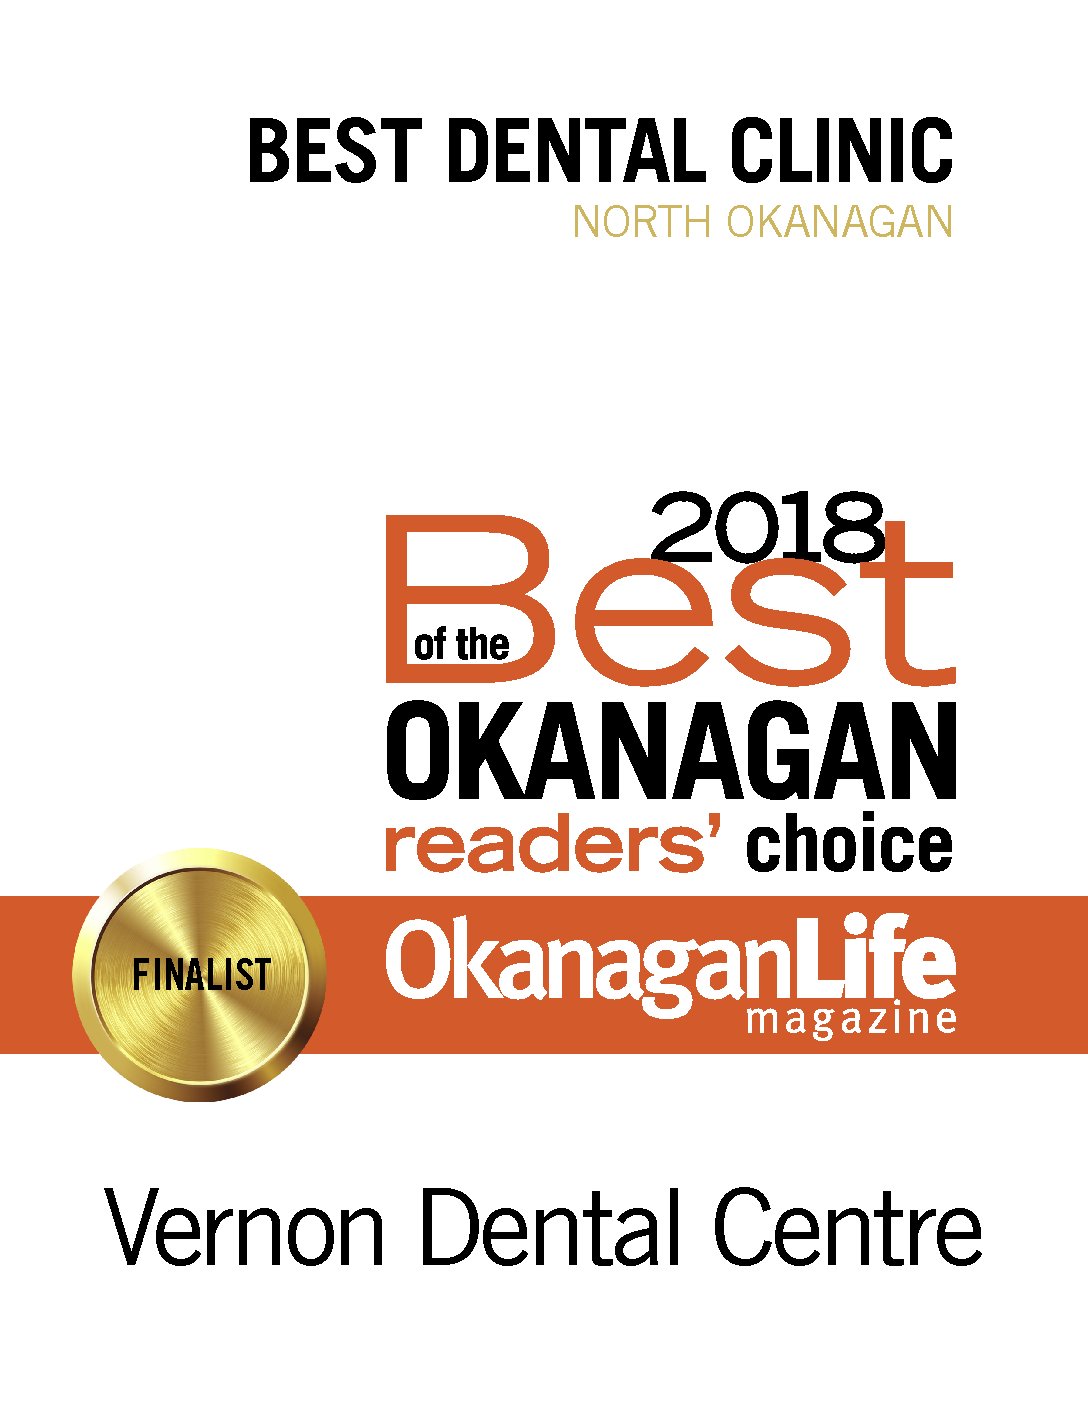 Vernon Dental Centre